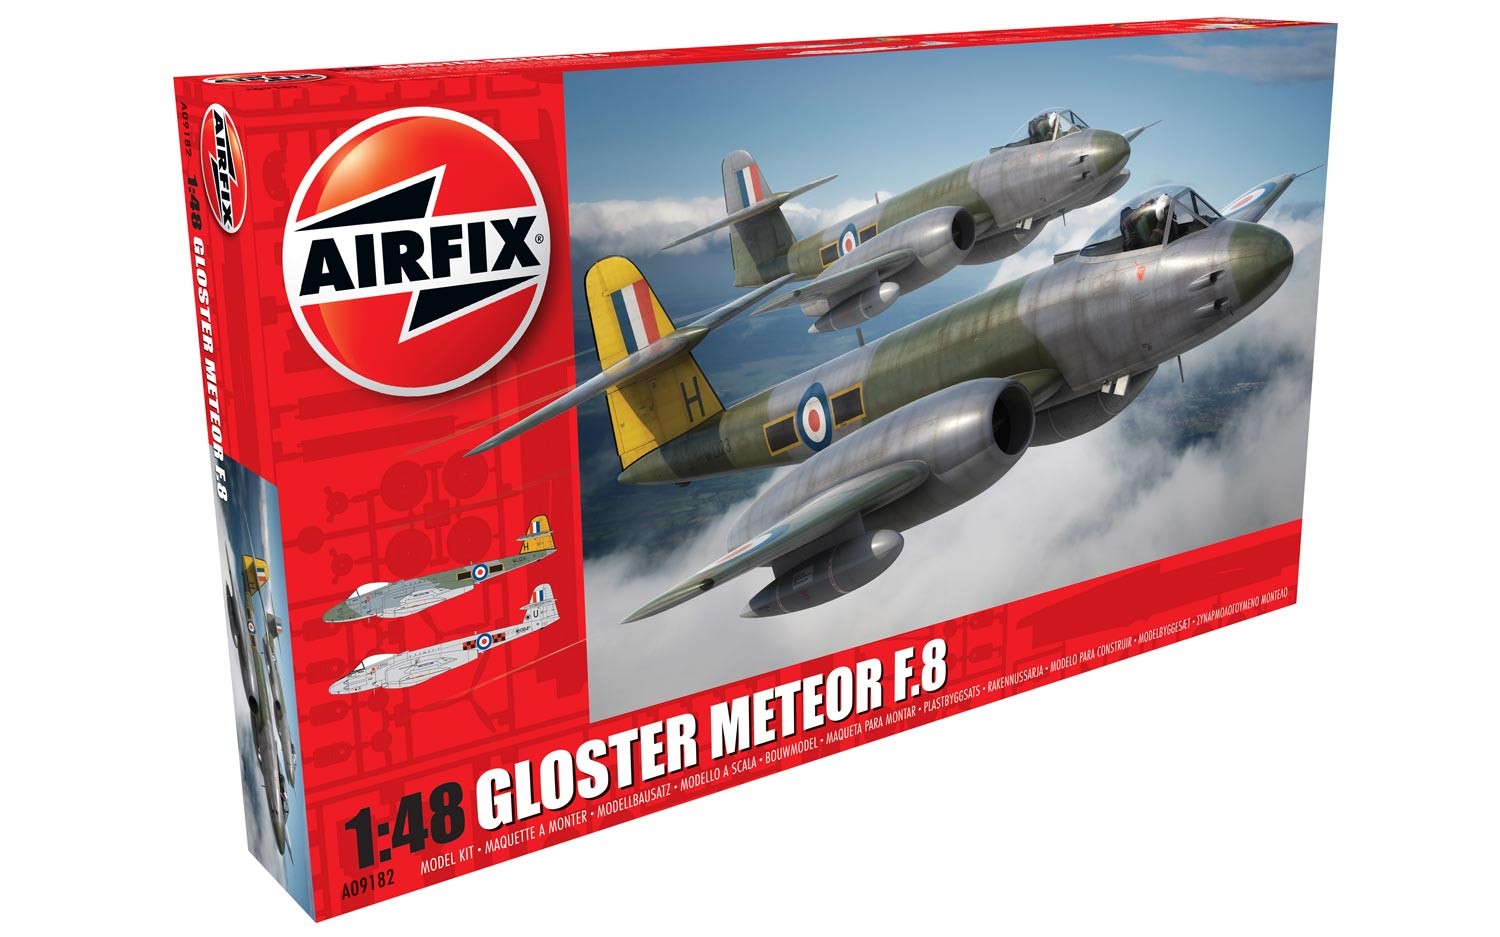 Gloster Meteor F8 British Jet Fighter